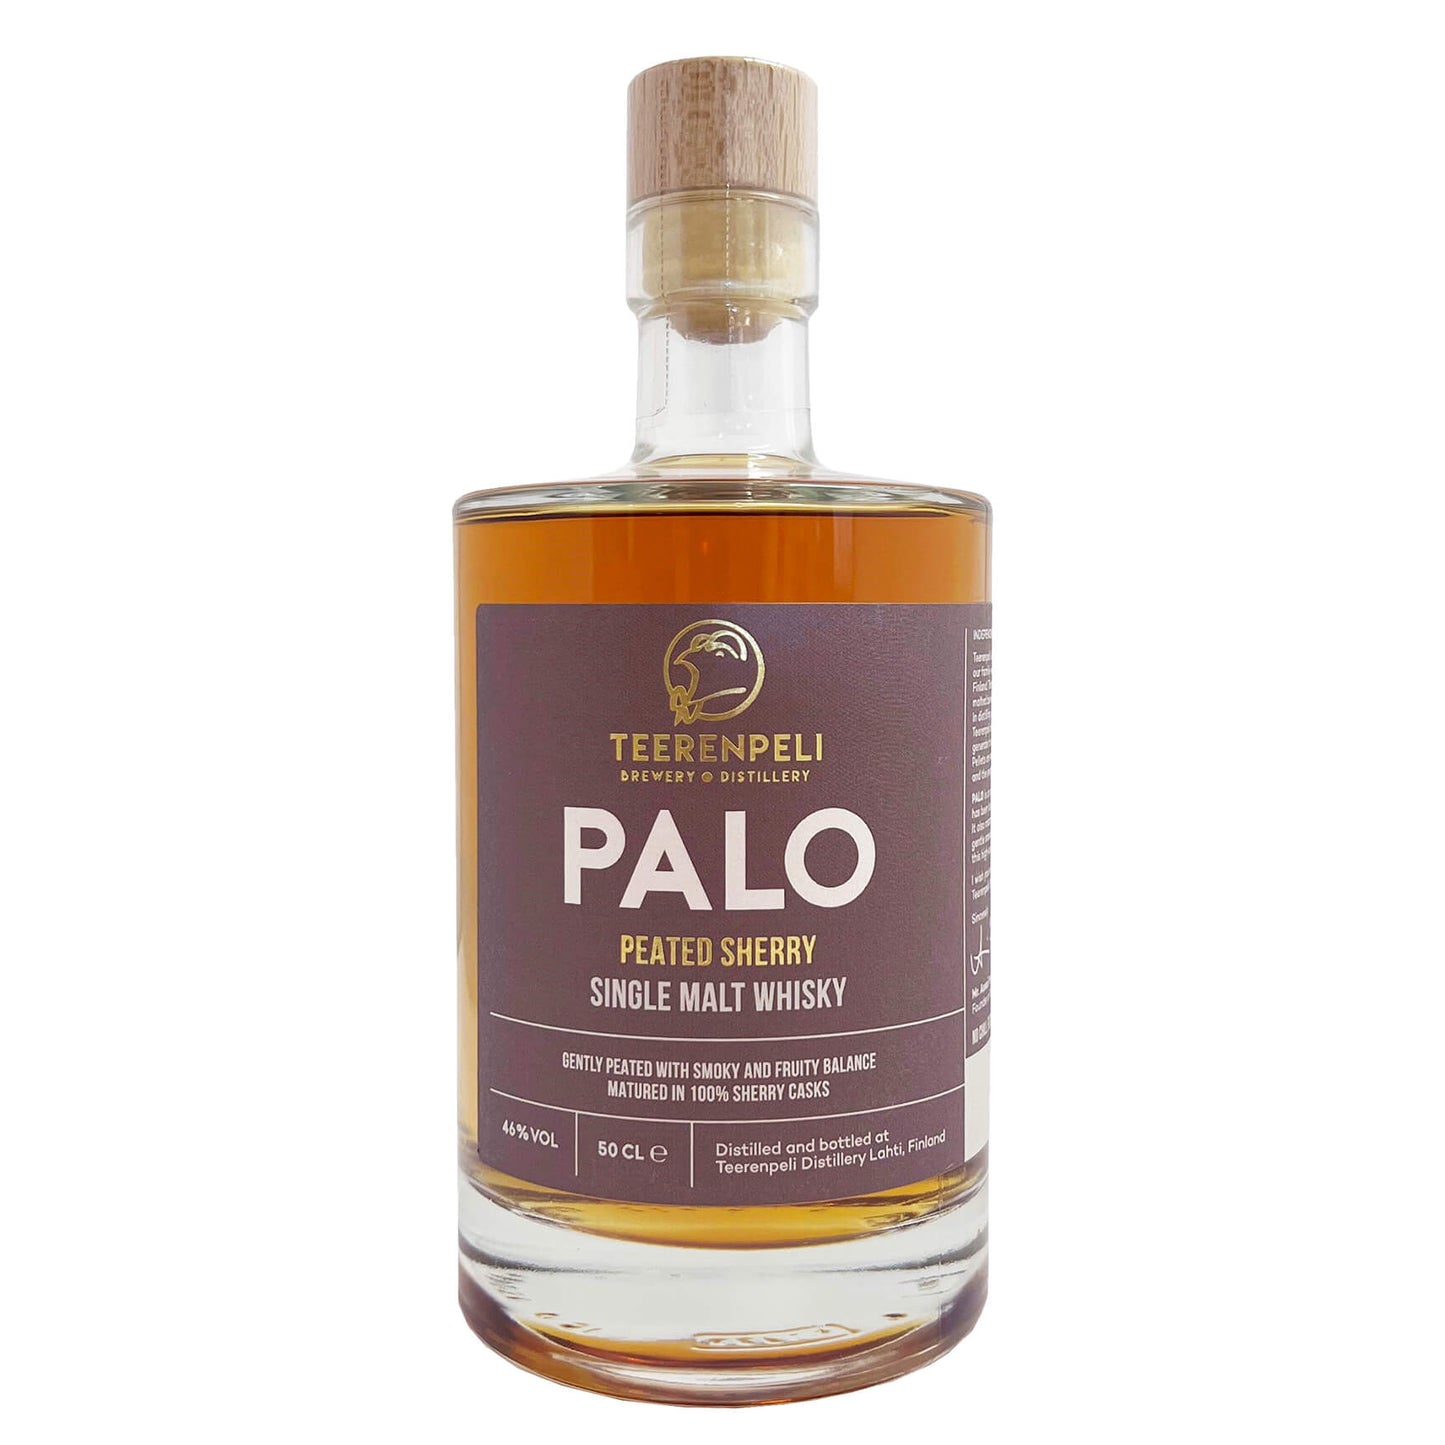 Teerenpeli Palo Single Malt Whisky 46% 0,5l